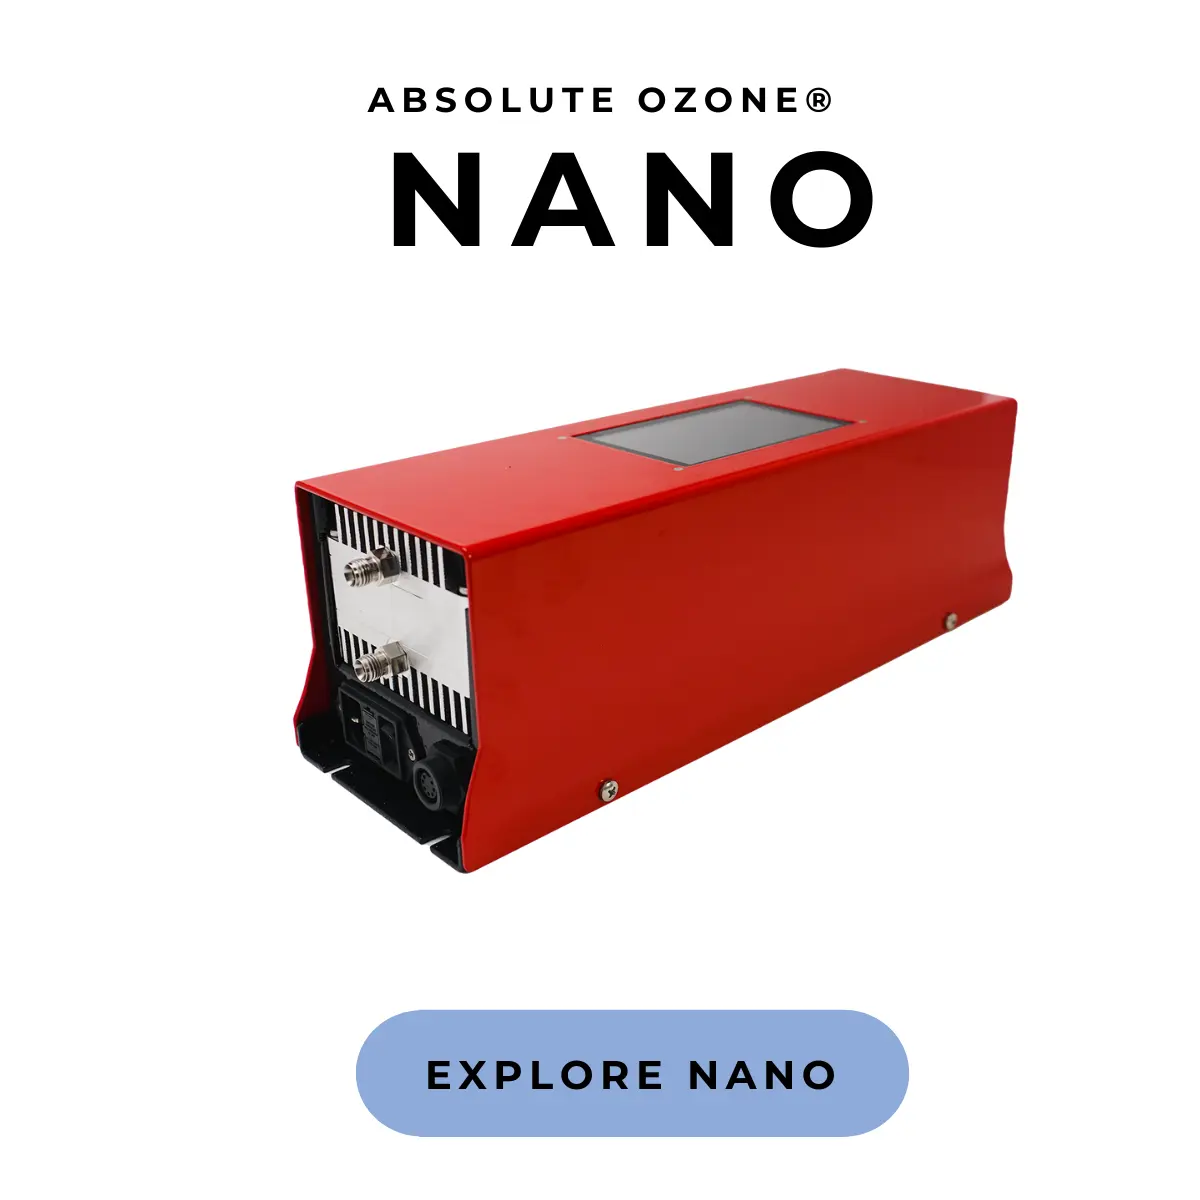 generador industrial de ozono NANO